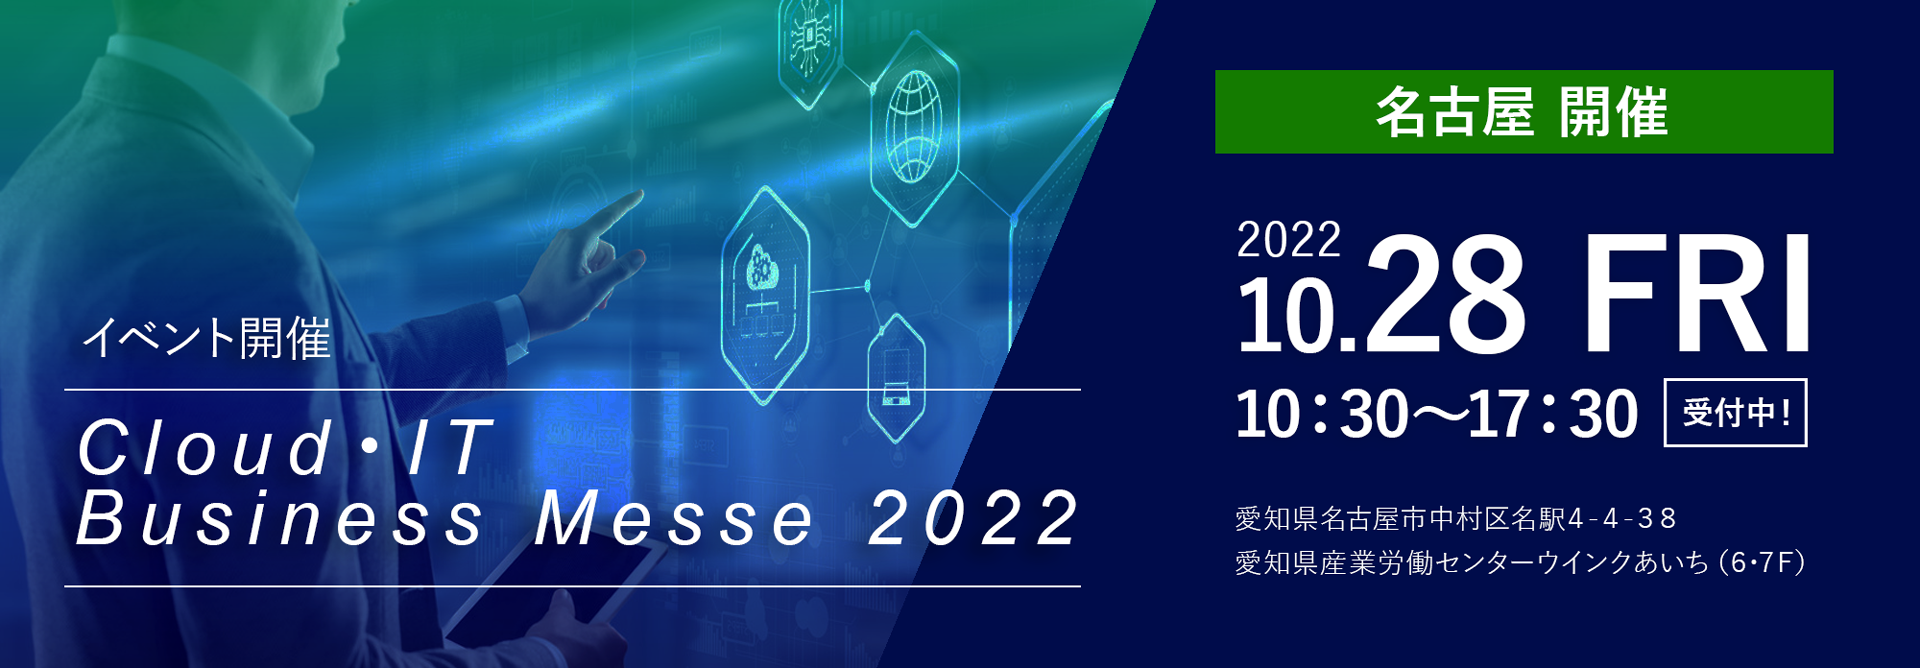 Cloud・IT Business Messe 2022 in Nagoya